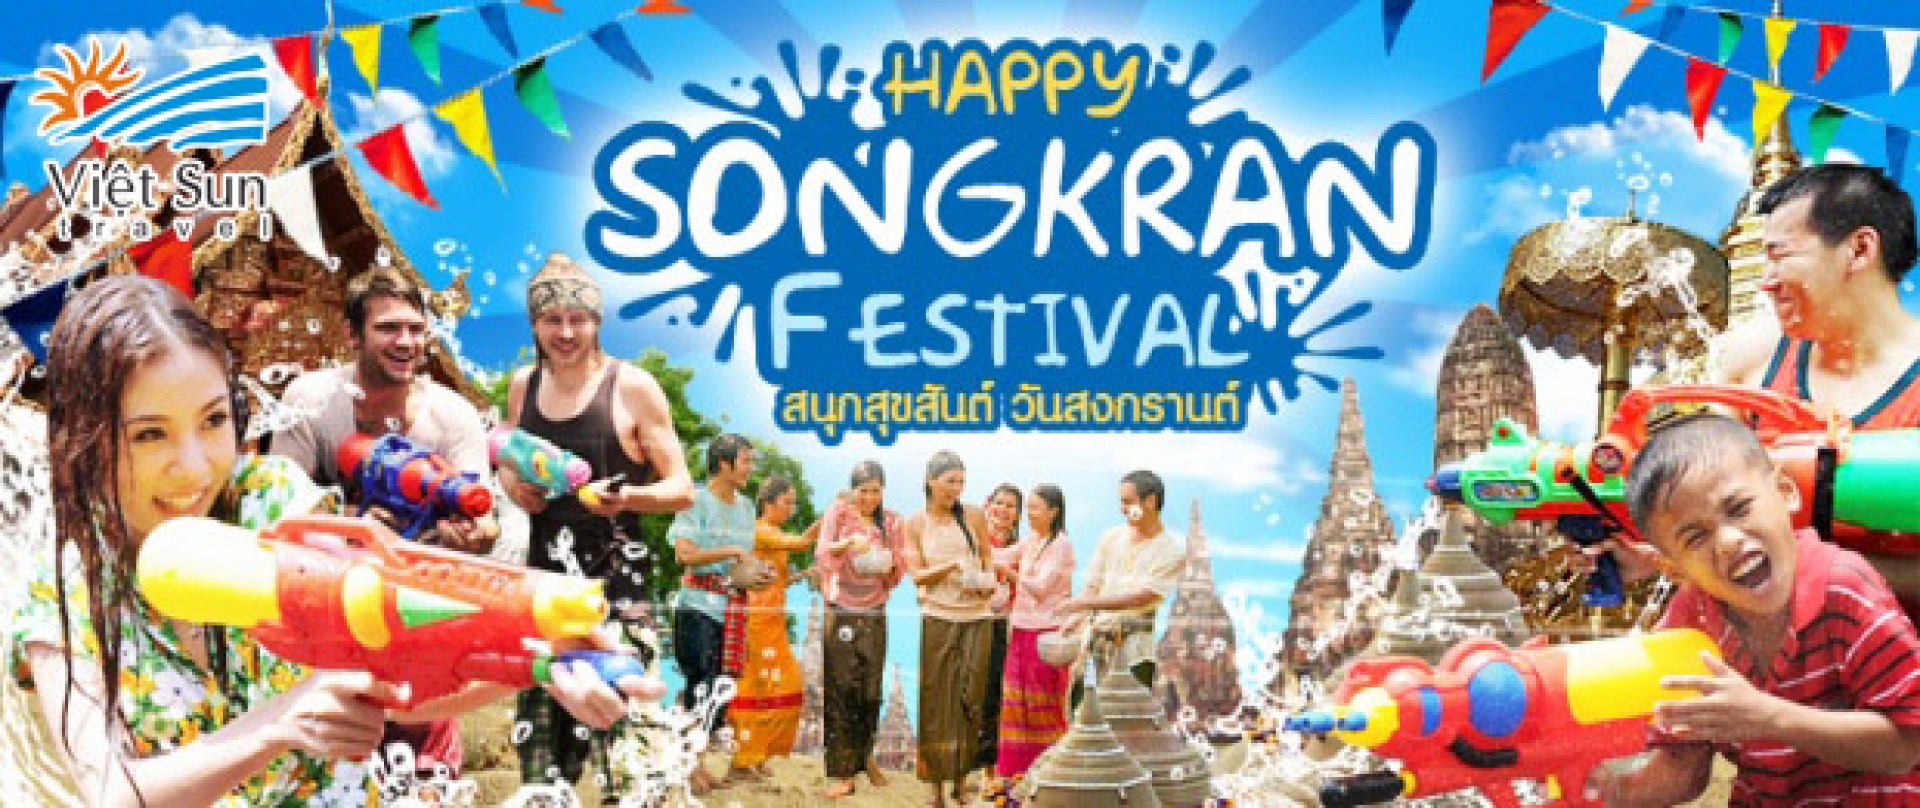 songkran-thailand-2018